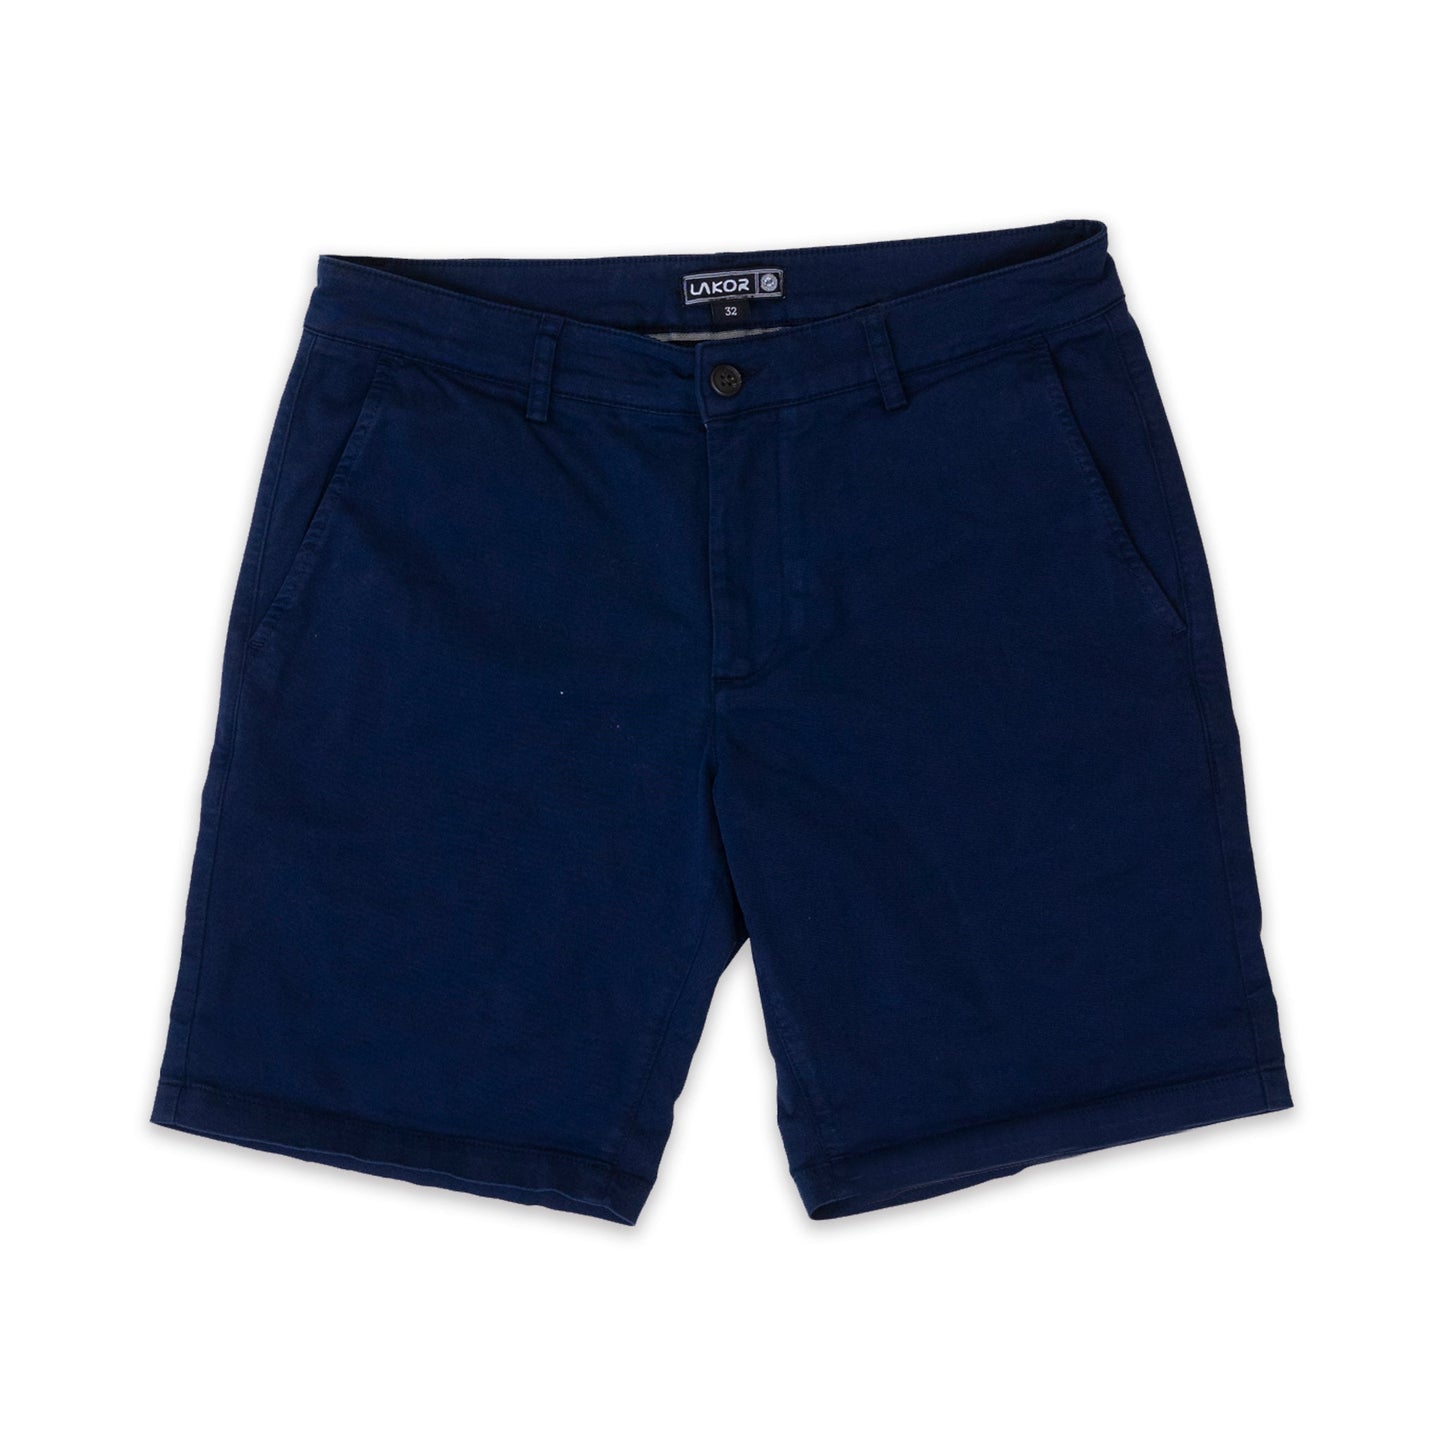 Chino-shorts (marine)